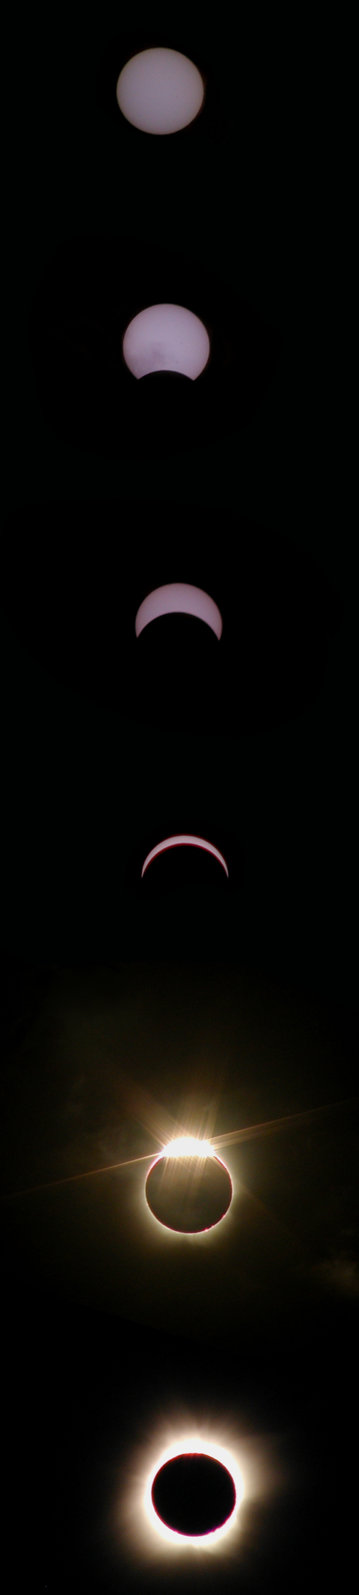 eclipse strip.jpg